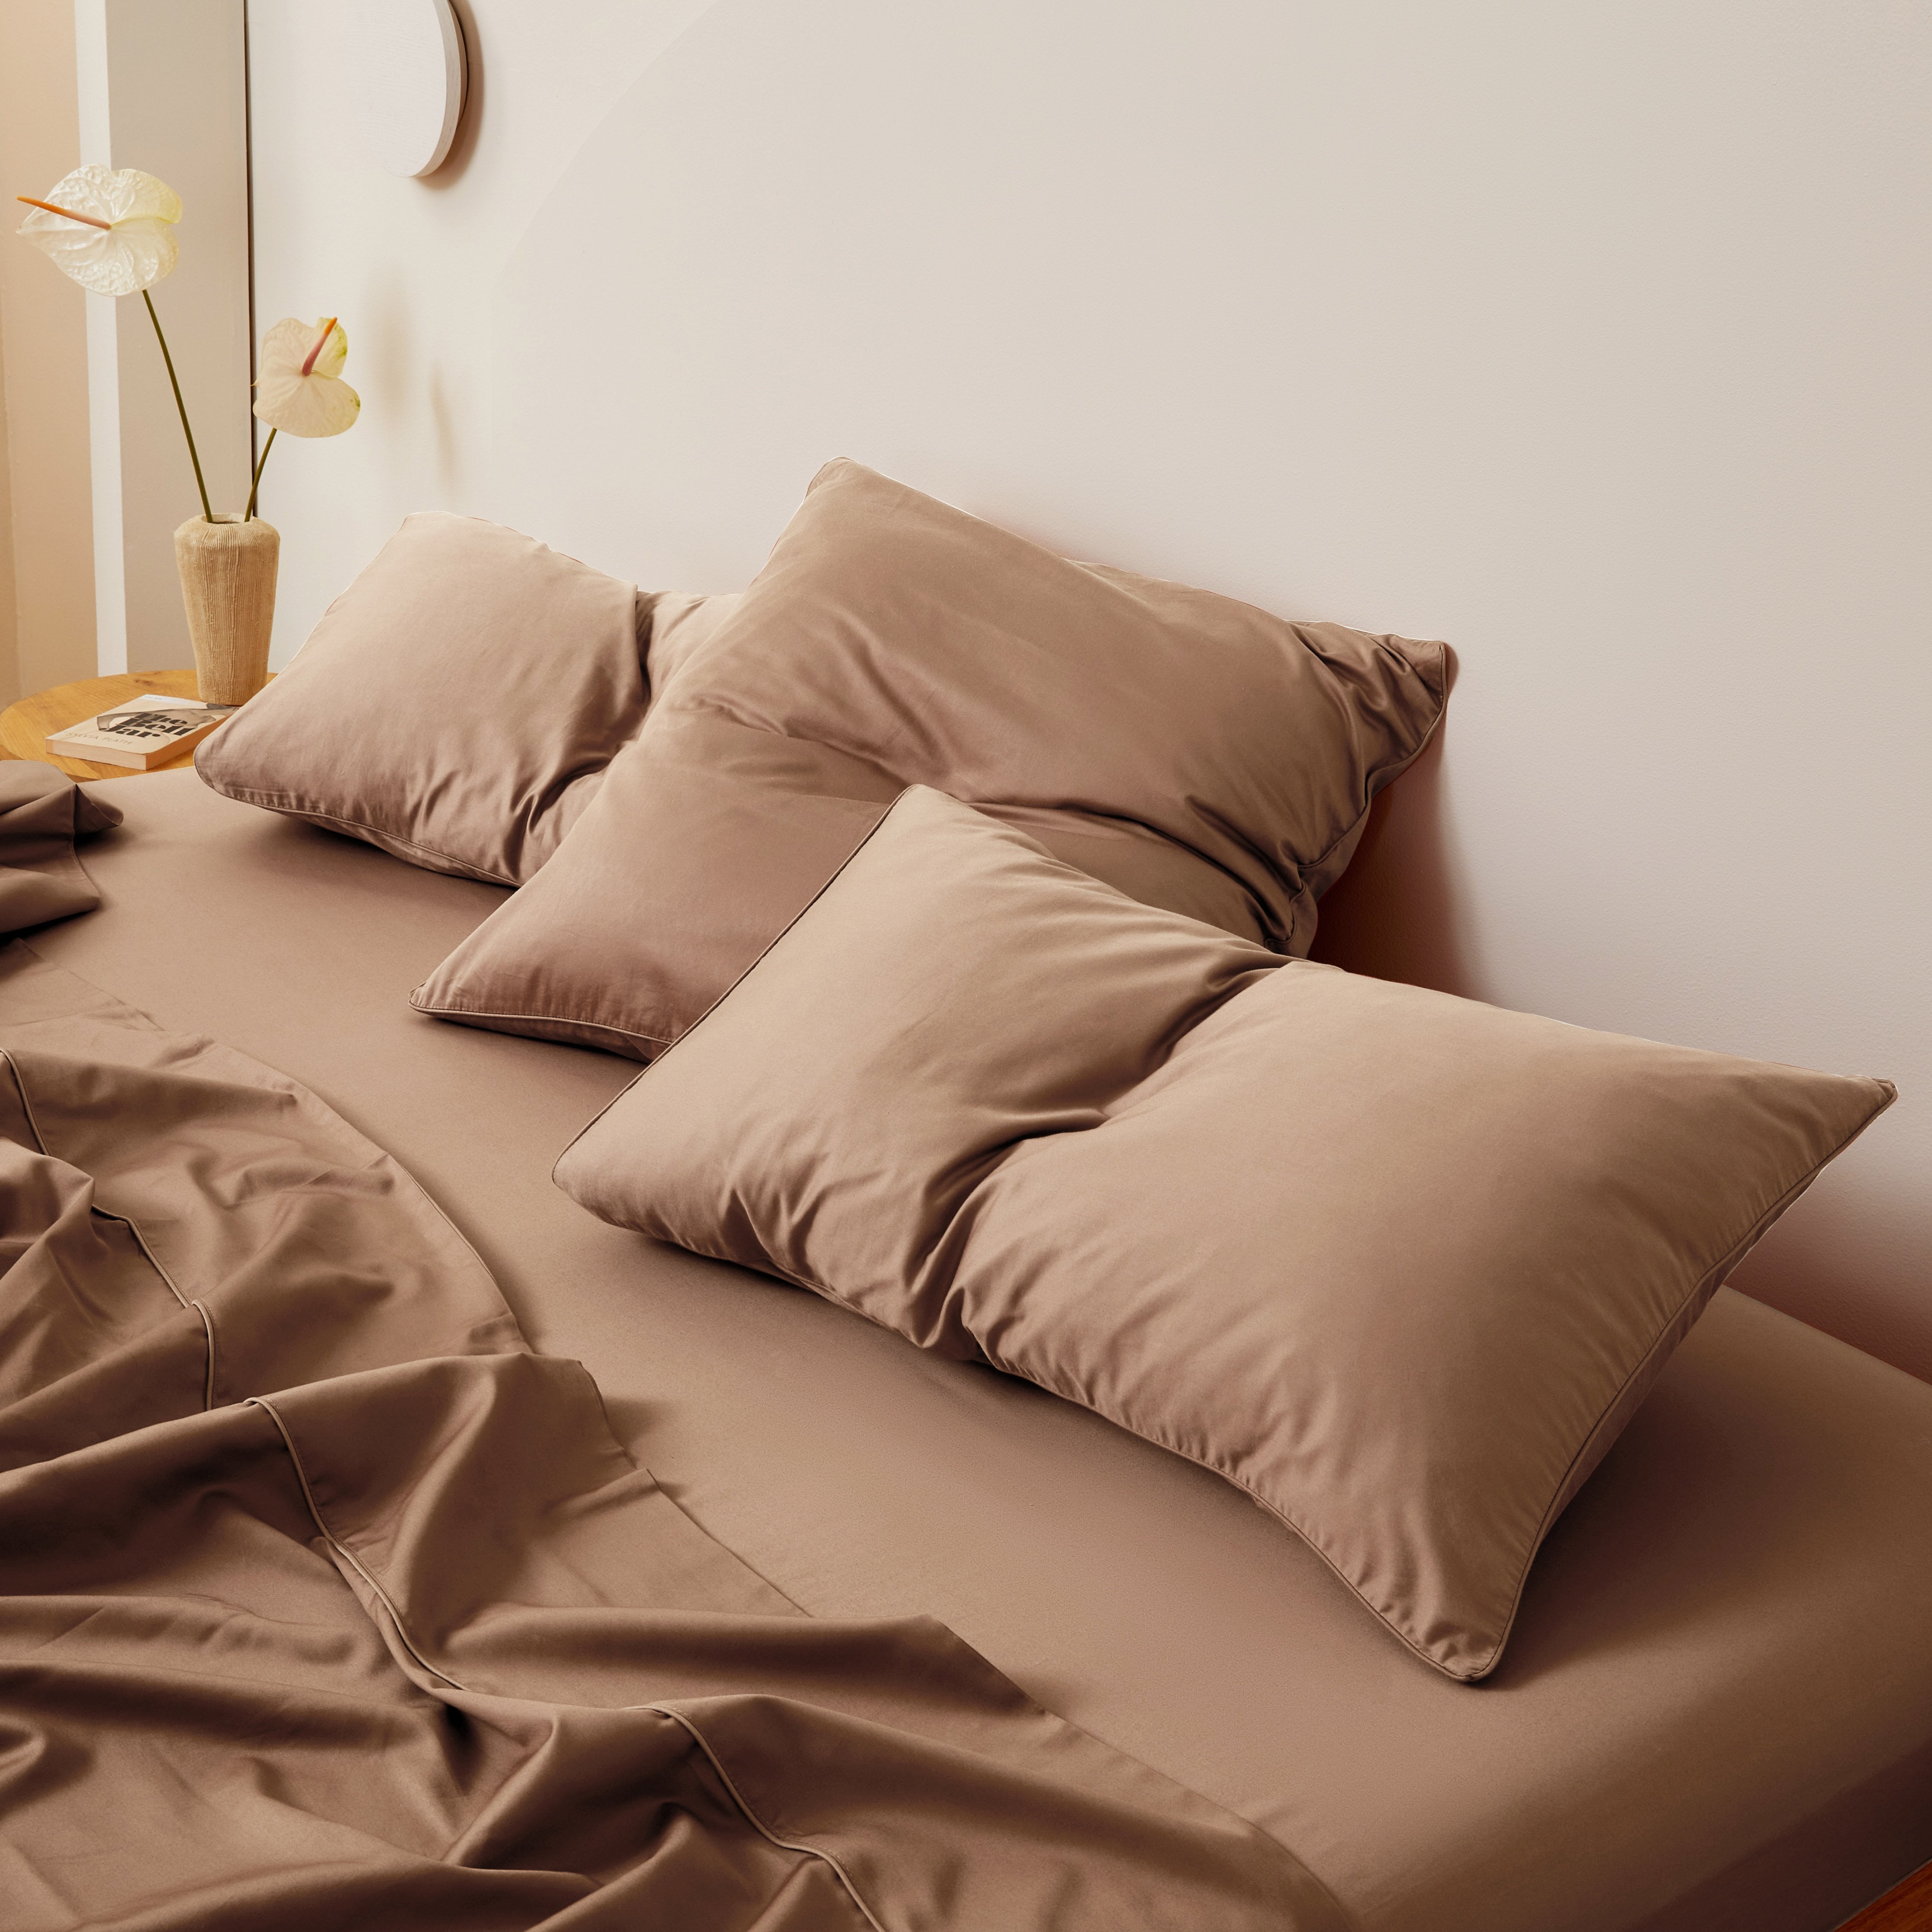 Bed Sheets & Sets, Linen, Cotton & Flannelette